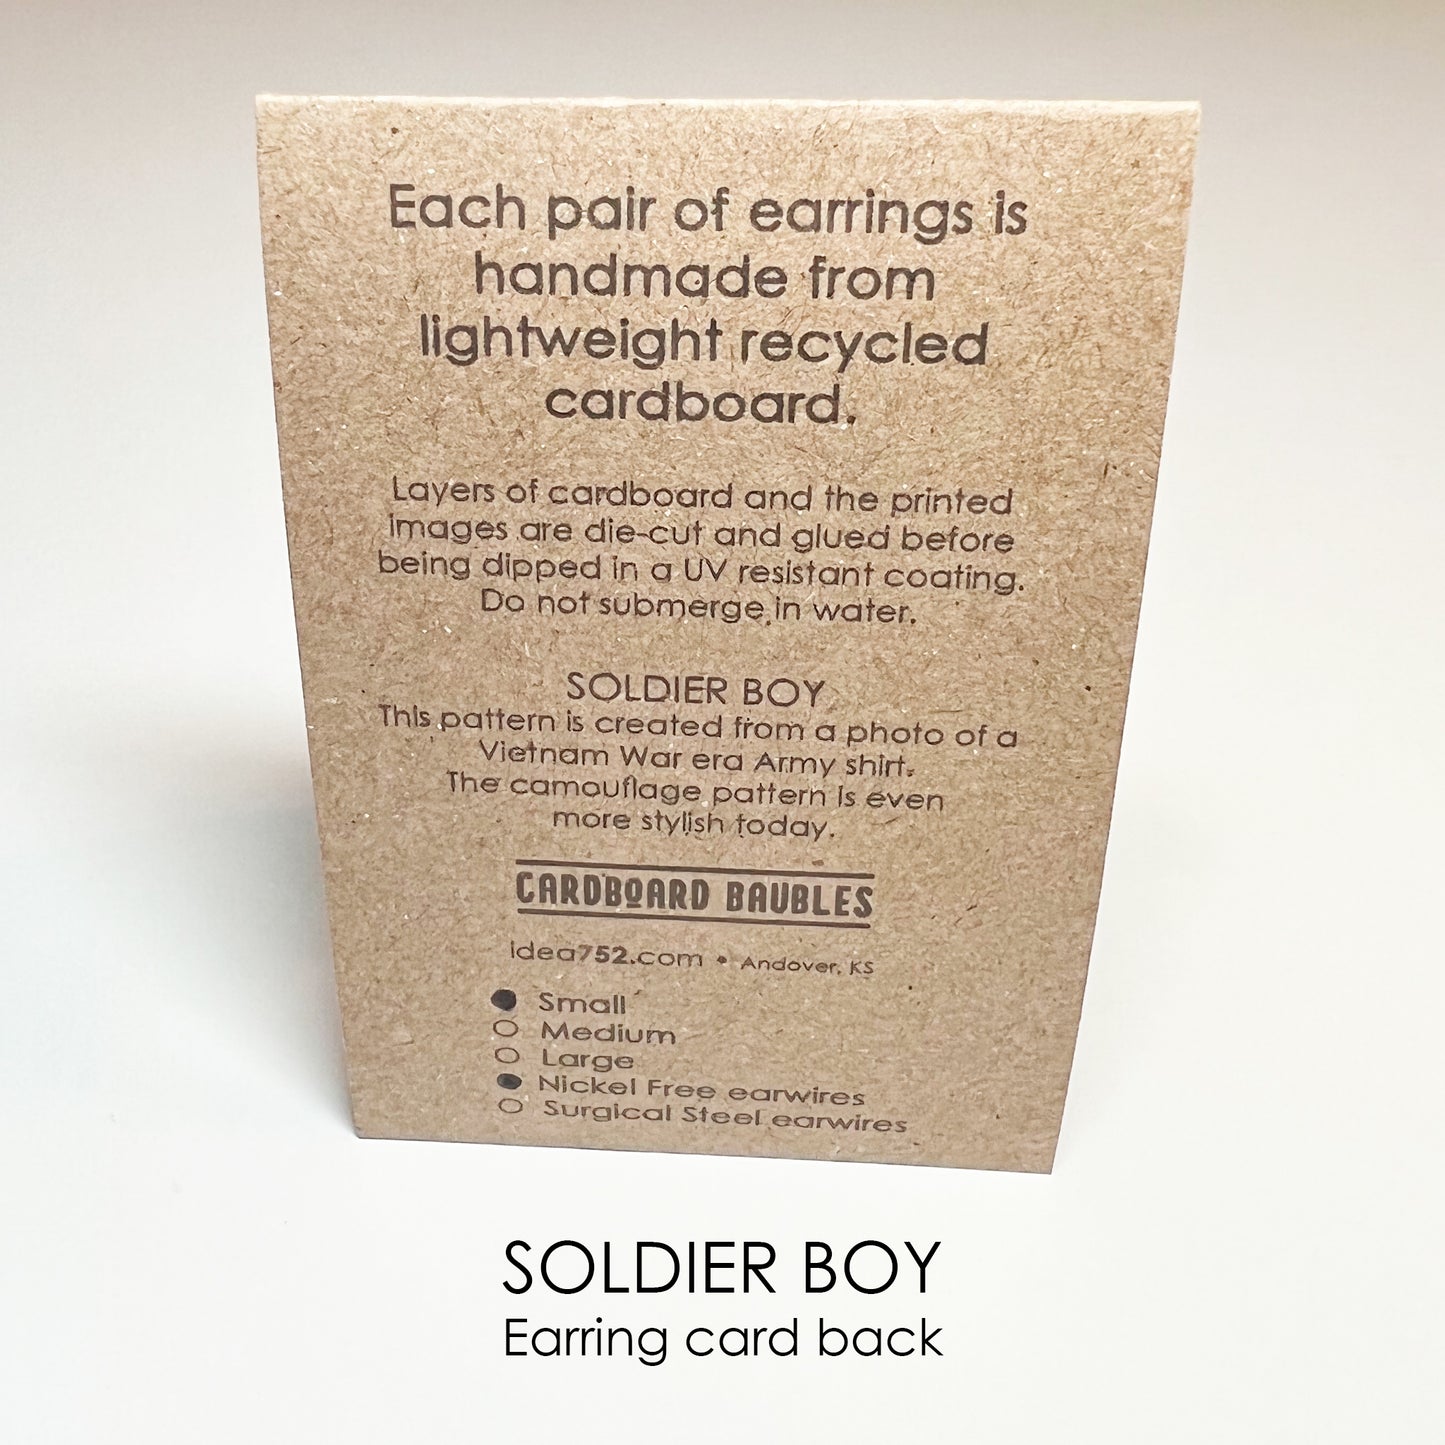 SOLDIER BOY - Oval Cardboard Baubles Earrings